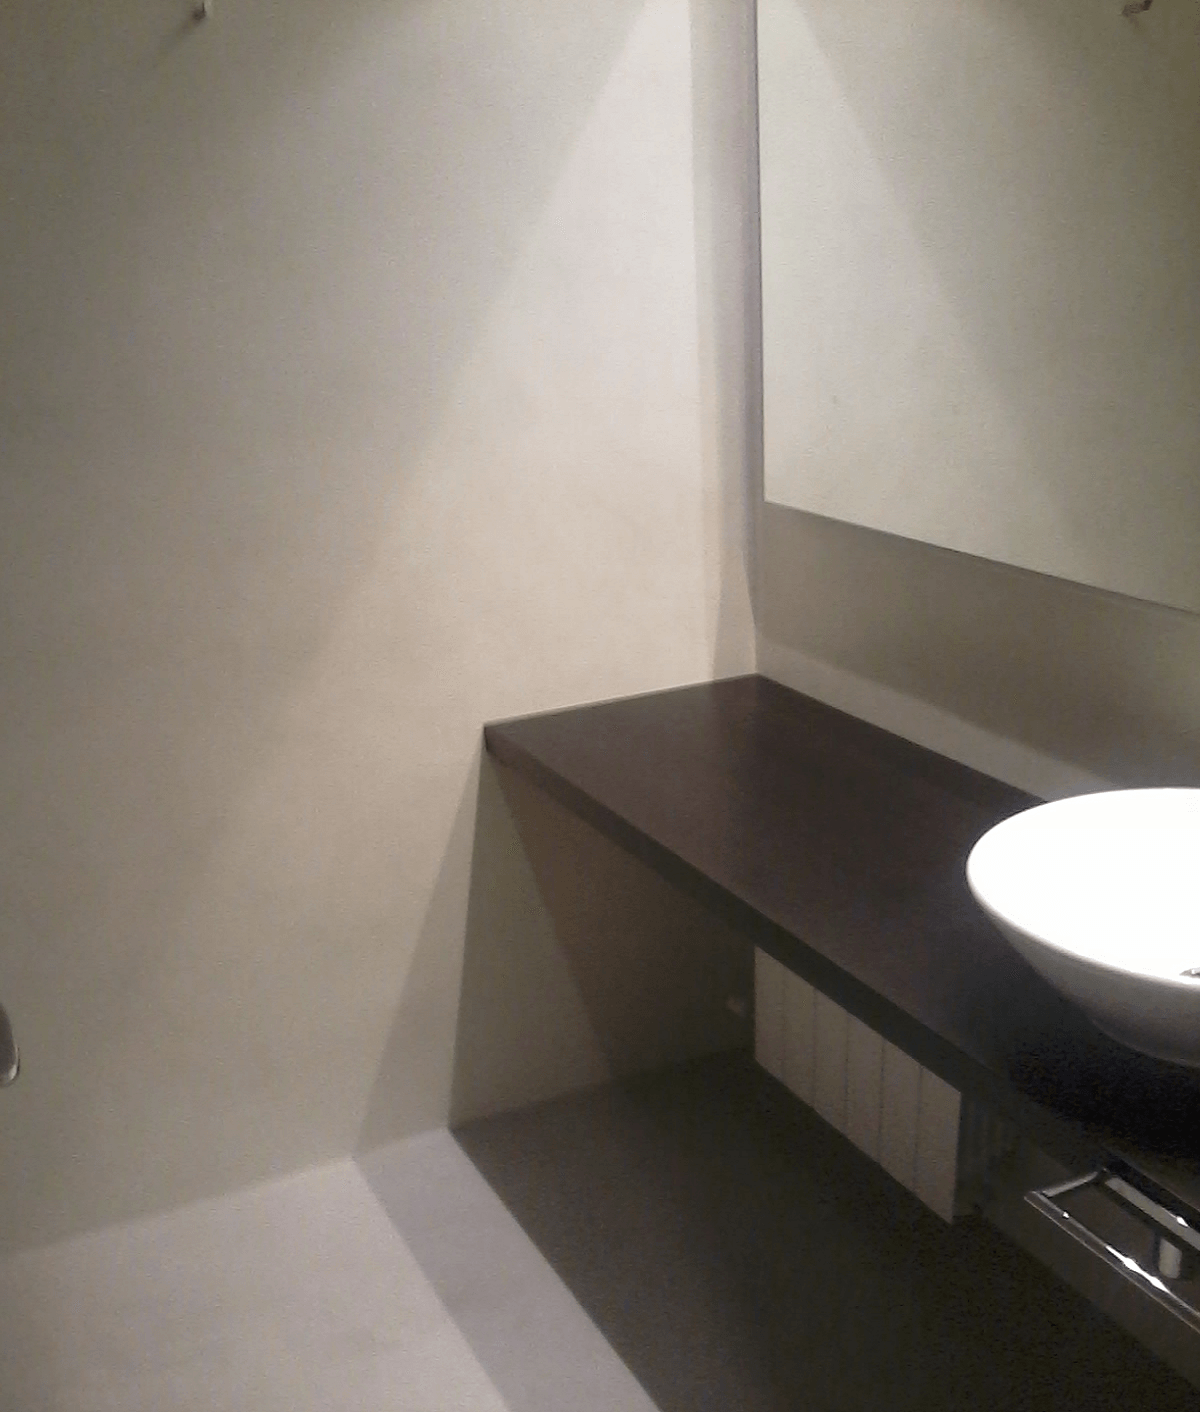 baño de microcemento suelo y paredes